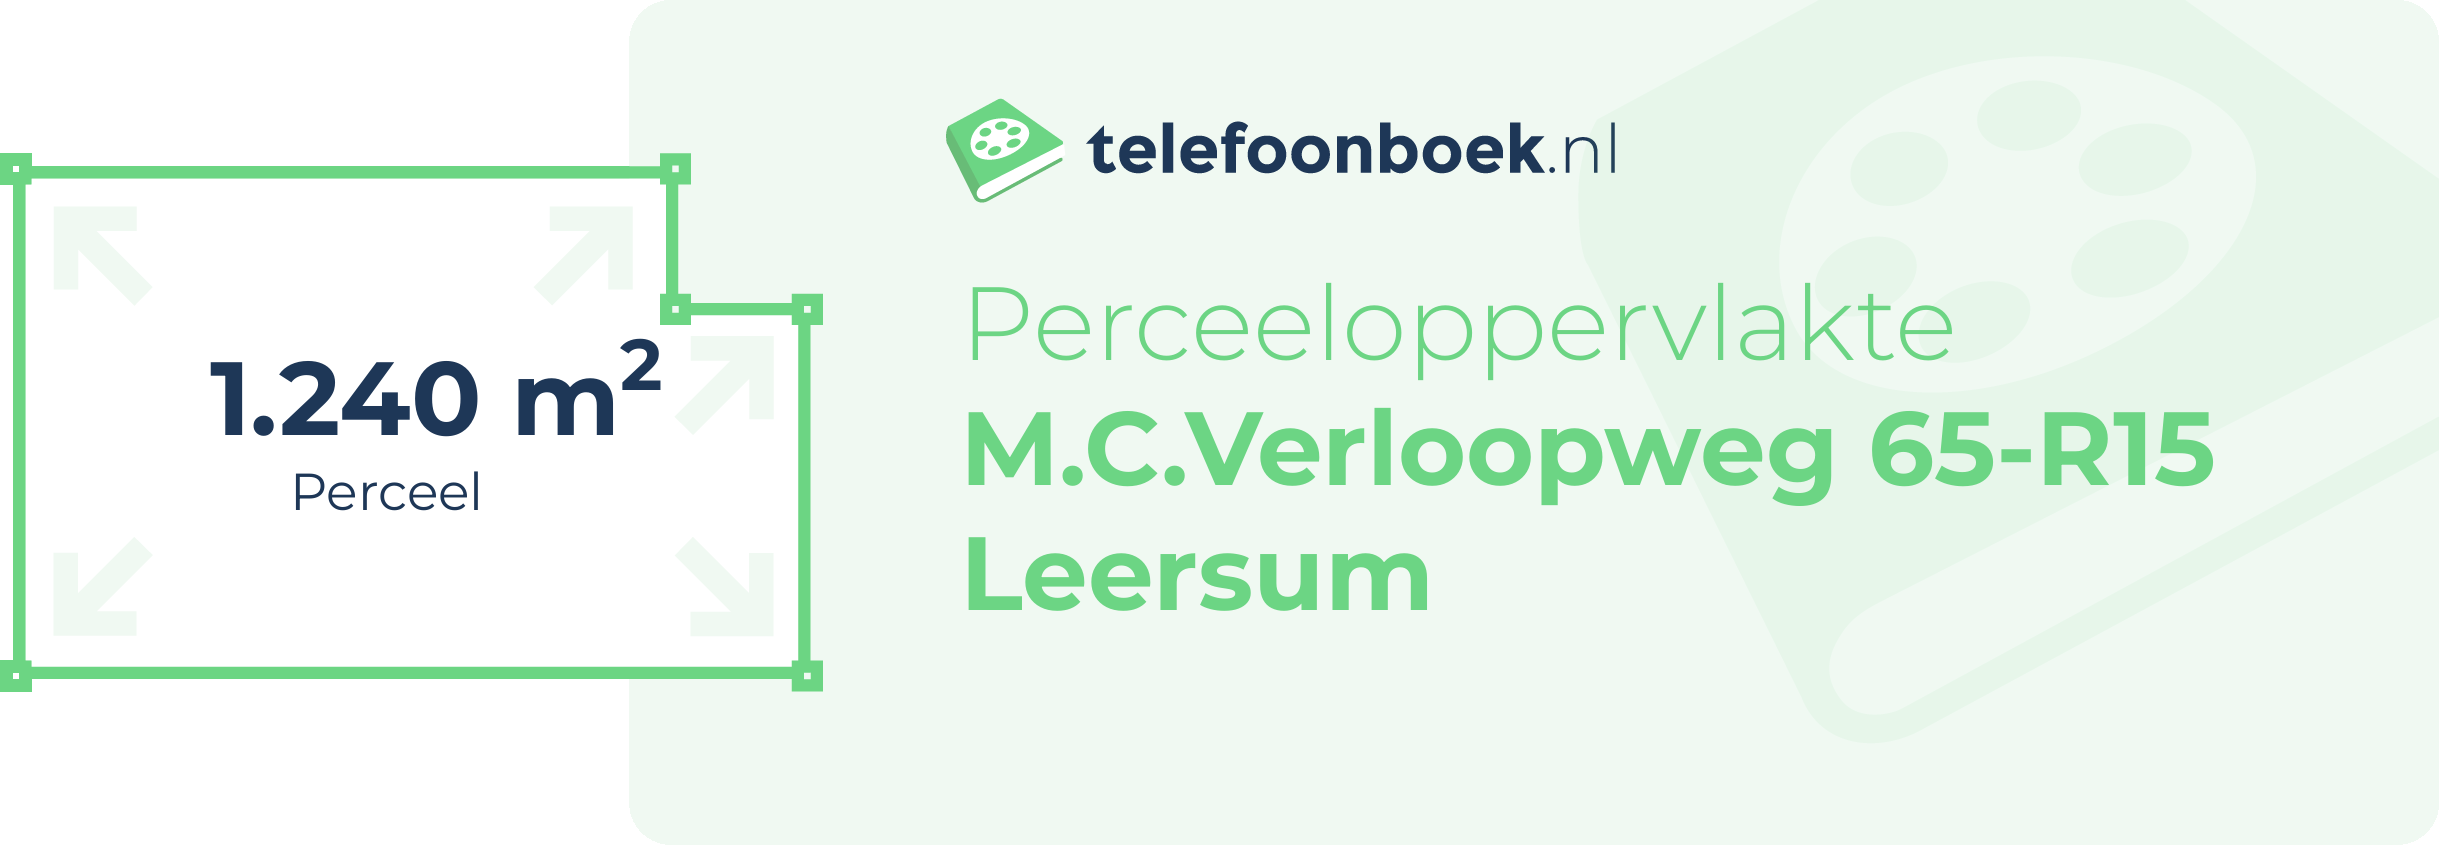 Perceeloppervlakte M.C.Verloopweg 65-R15 Leersum